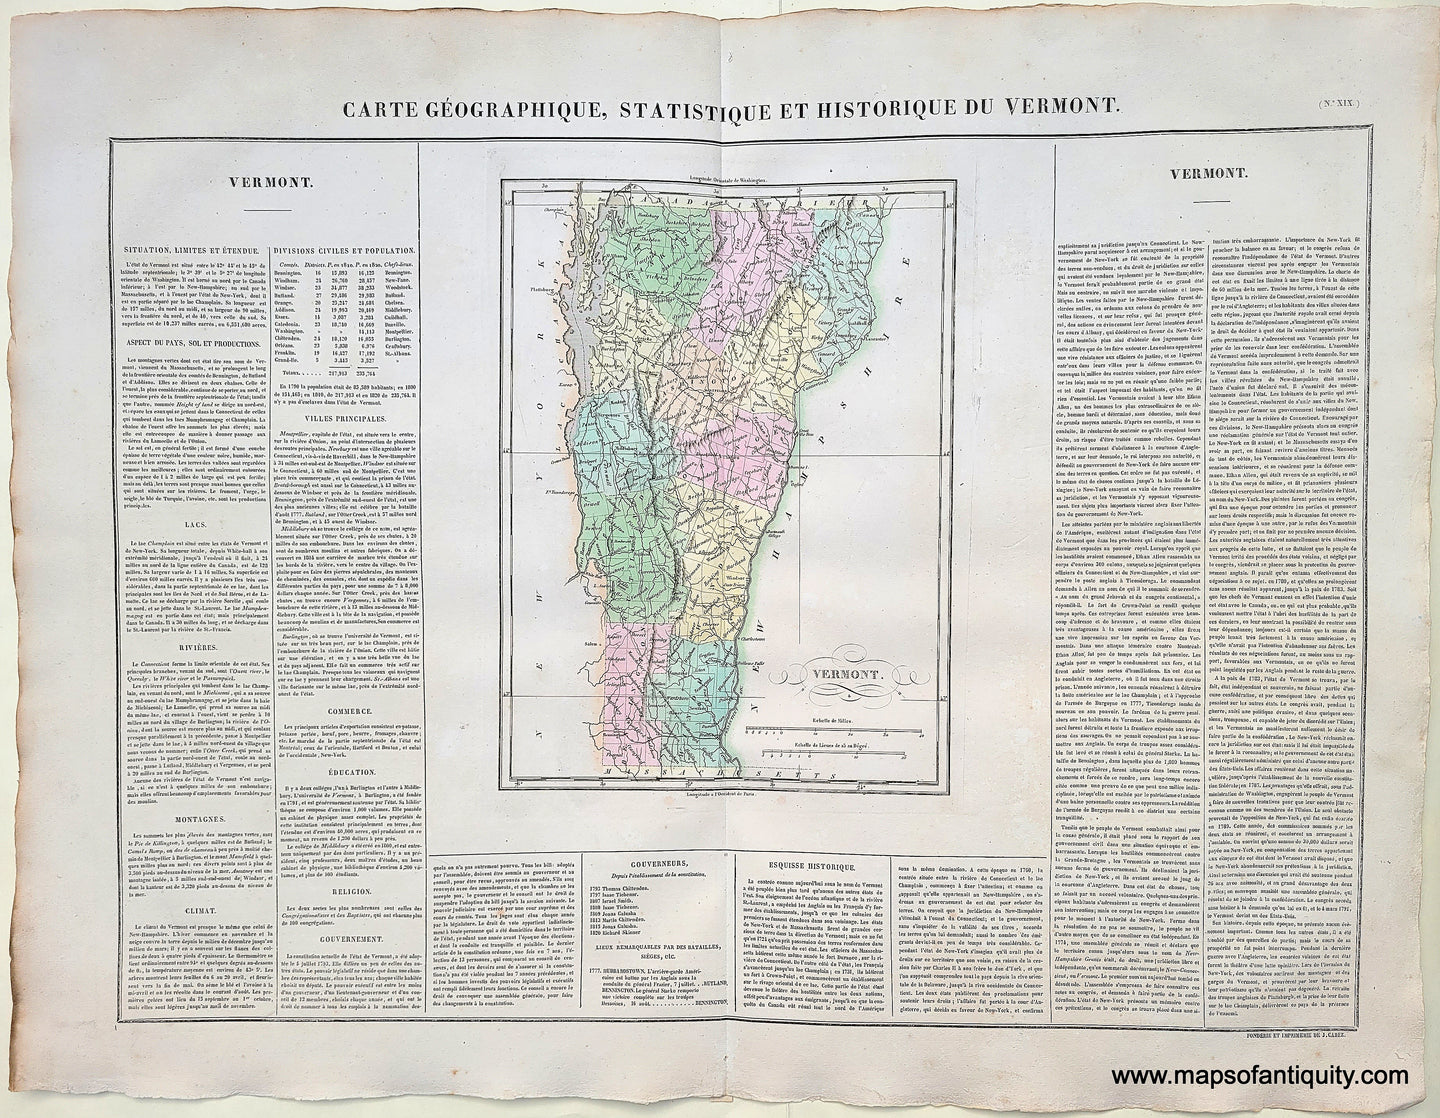 Genuine-Antique-Map-Carte-Geographique-Statistique-et-Historique-du-Vermont-1825-Buchon-Maps-Of-Antiquity